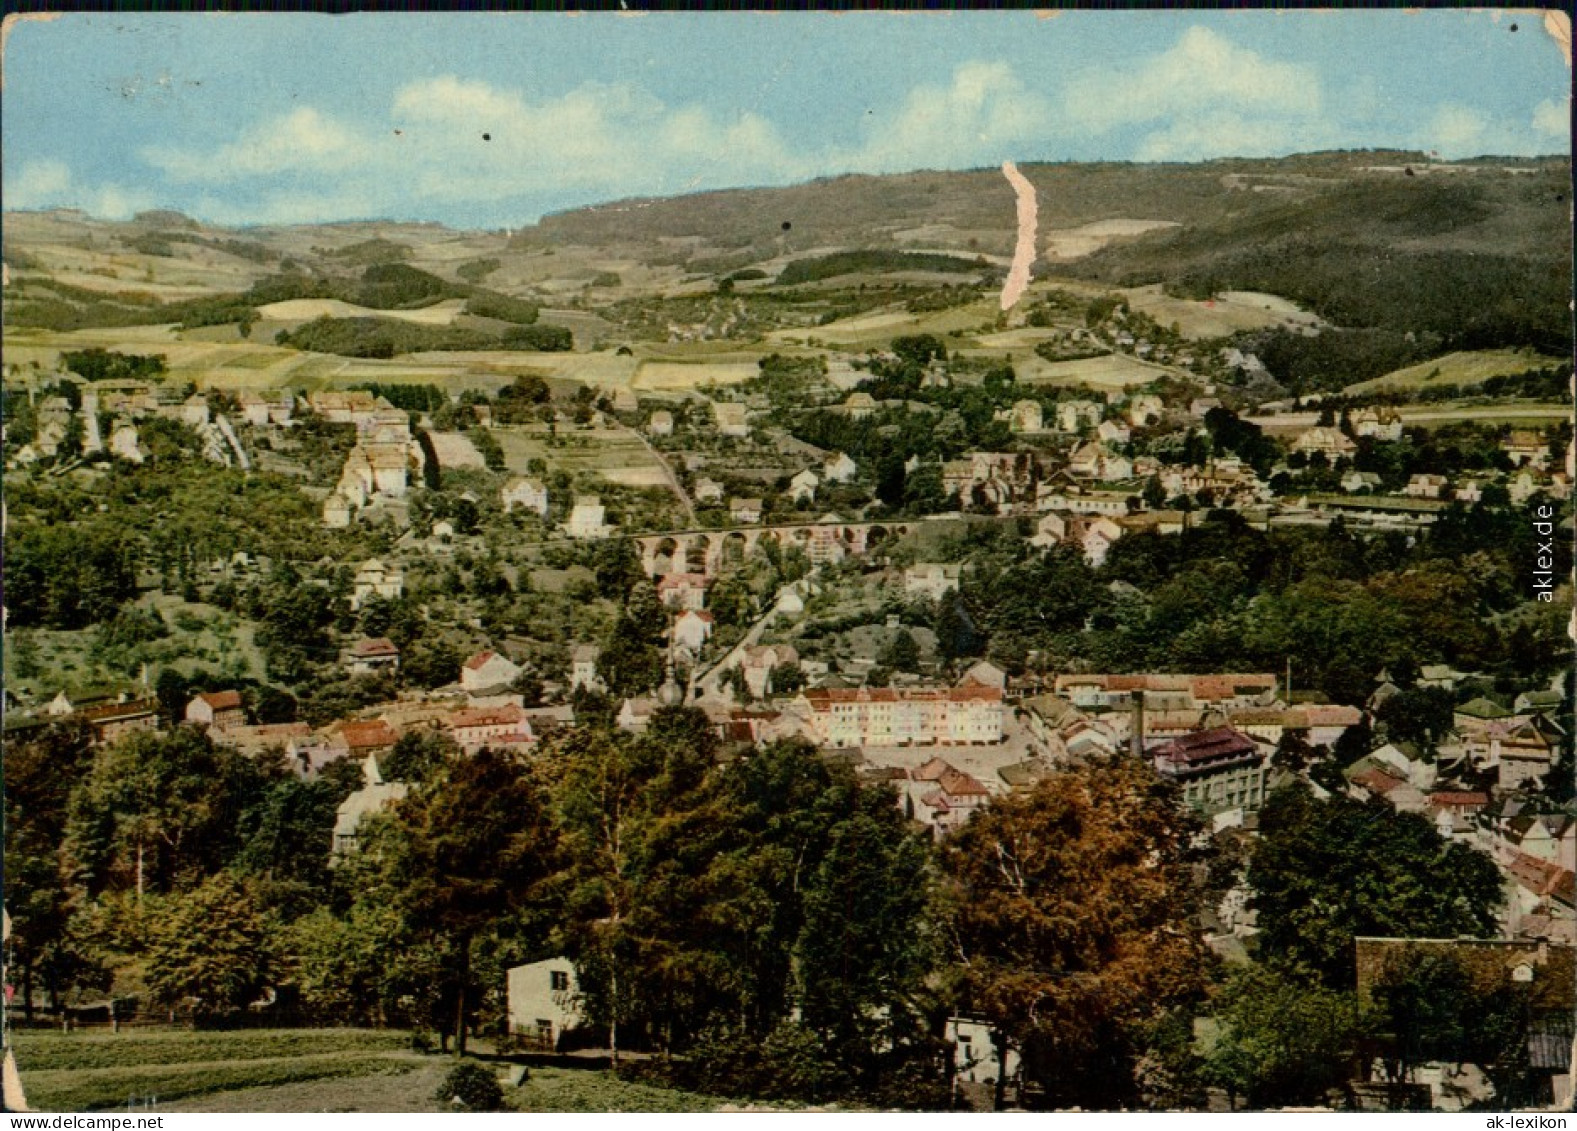 Ansichtskarte Sebnitz Panorama-Ansicht 1965 - Sebnitz